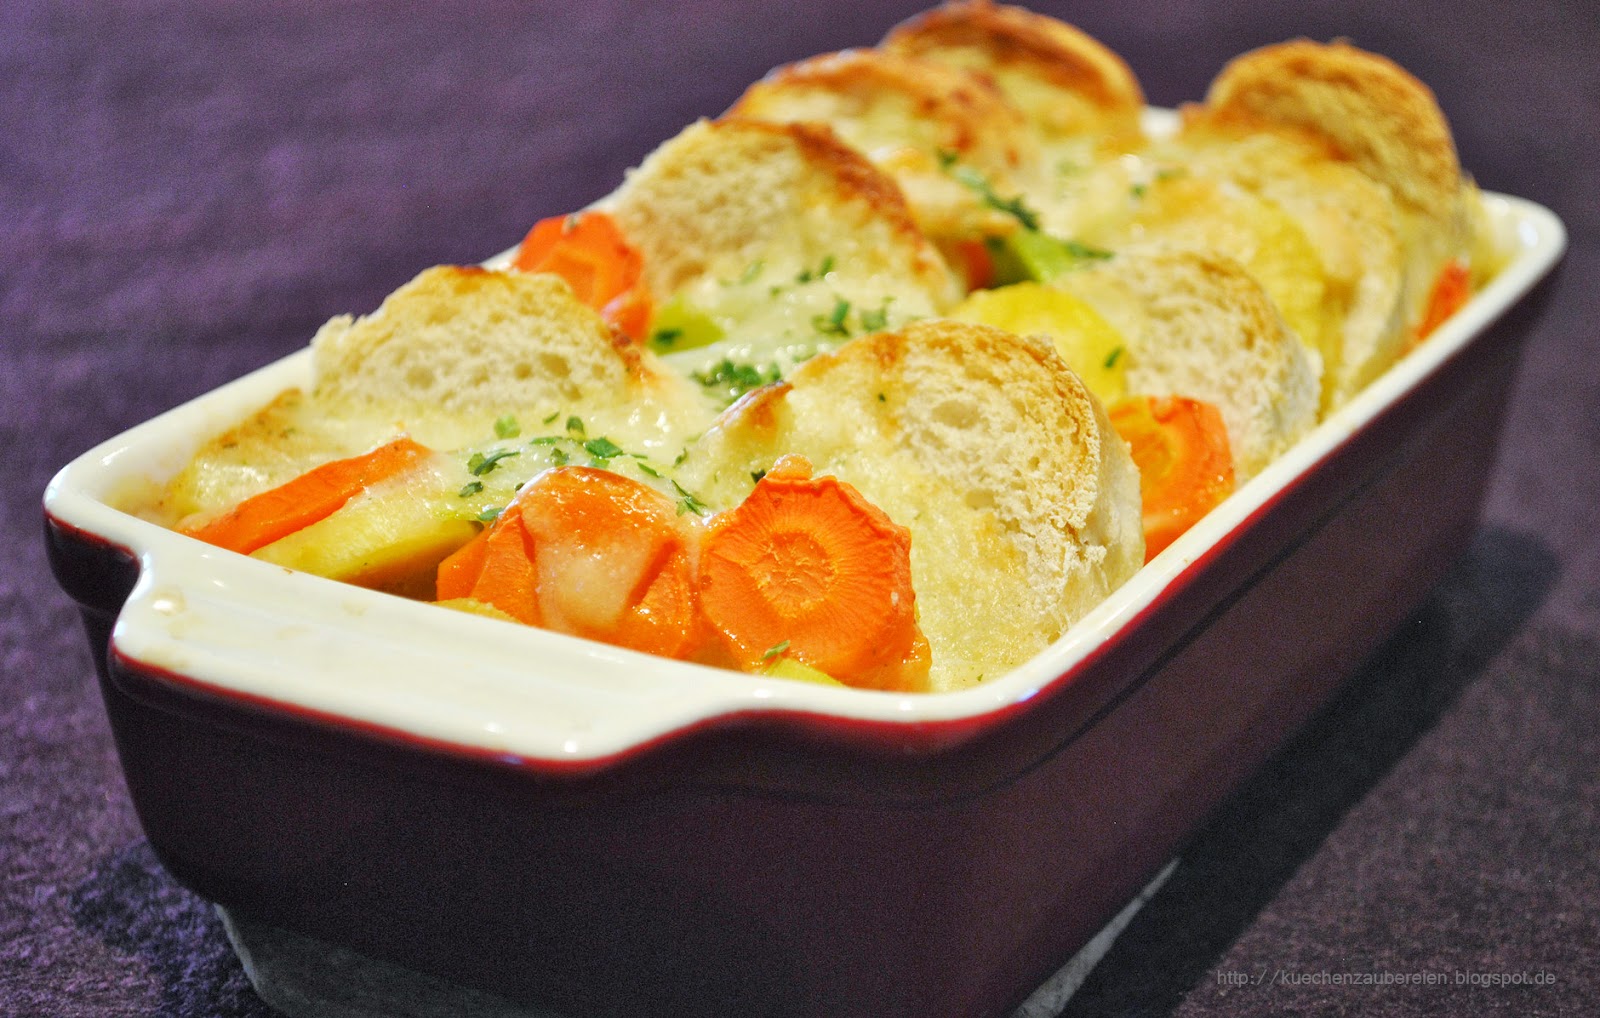 Küchenzaubereien: Gemüseauflauf mit Baguette und Kräuter-Käsesoße